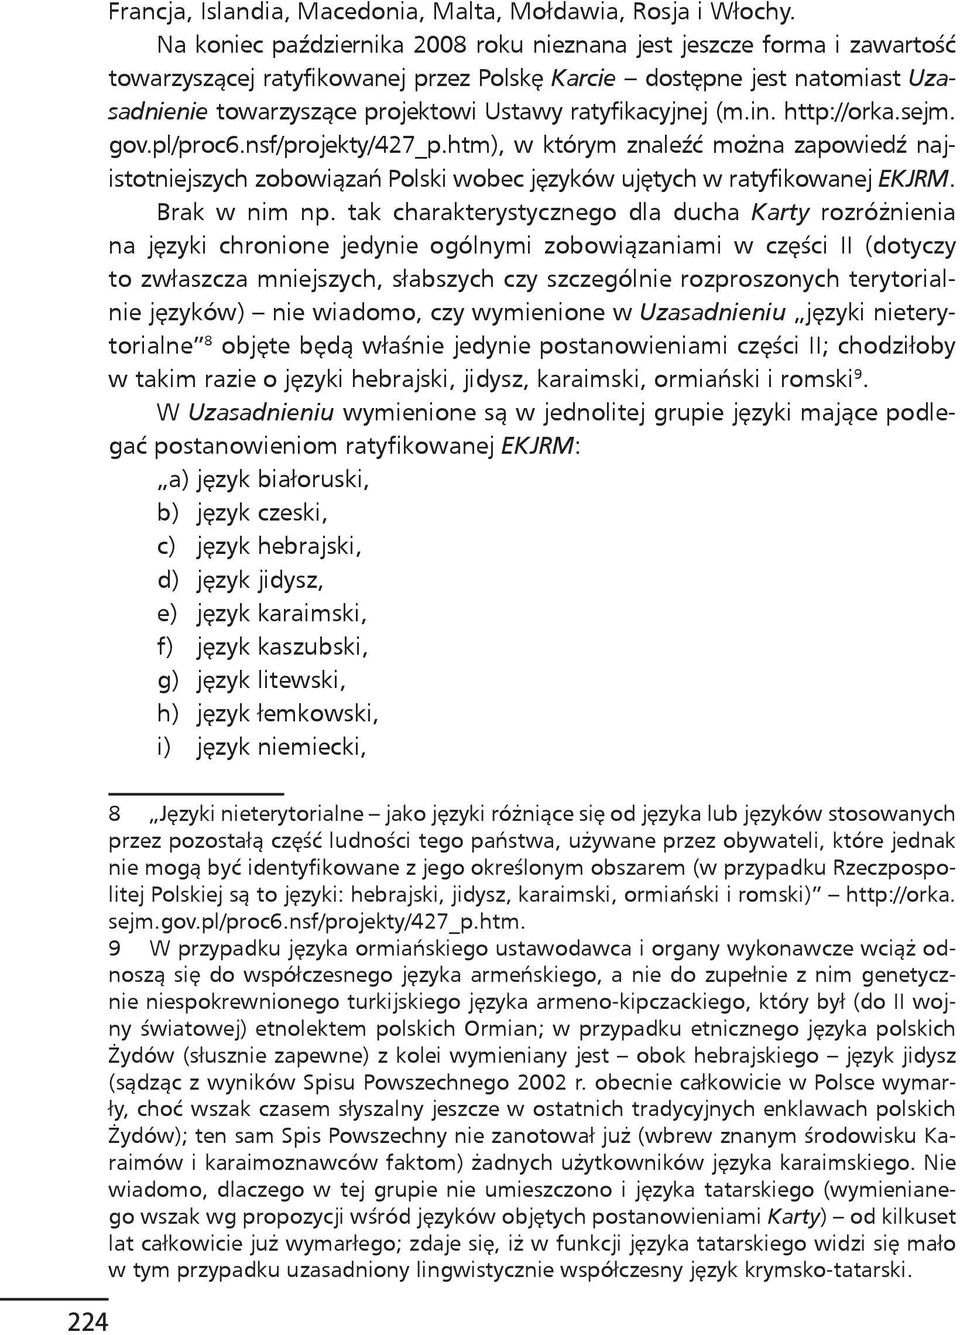 ratyfikacyjnej (m.in. http://orka.sejm. gov.pl/proc6.nsf/projekty/427_p.htm), w którym znaleźć można zapowiedź najistotniejszych zobowiązań Polski wobec języków ujętych w ratyfikowanej EKJRM.